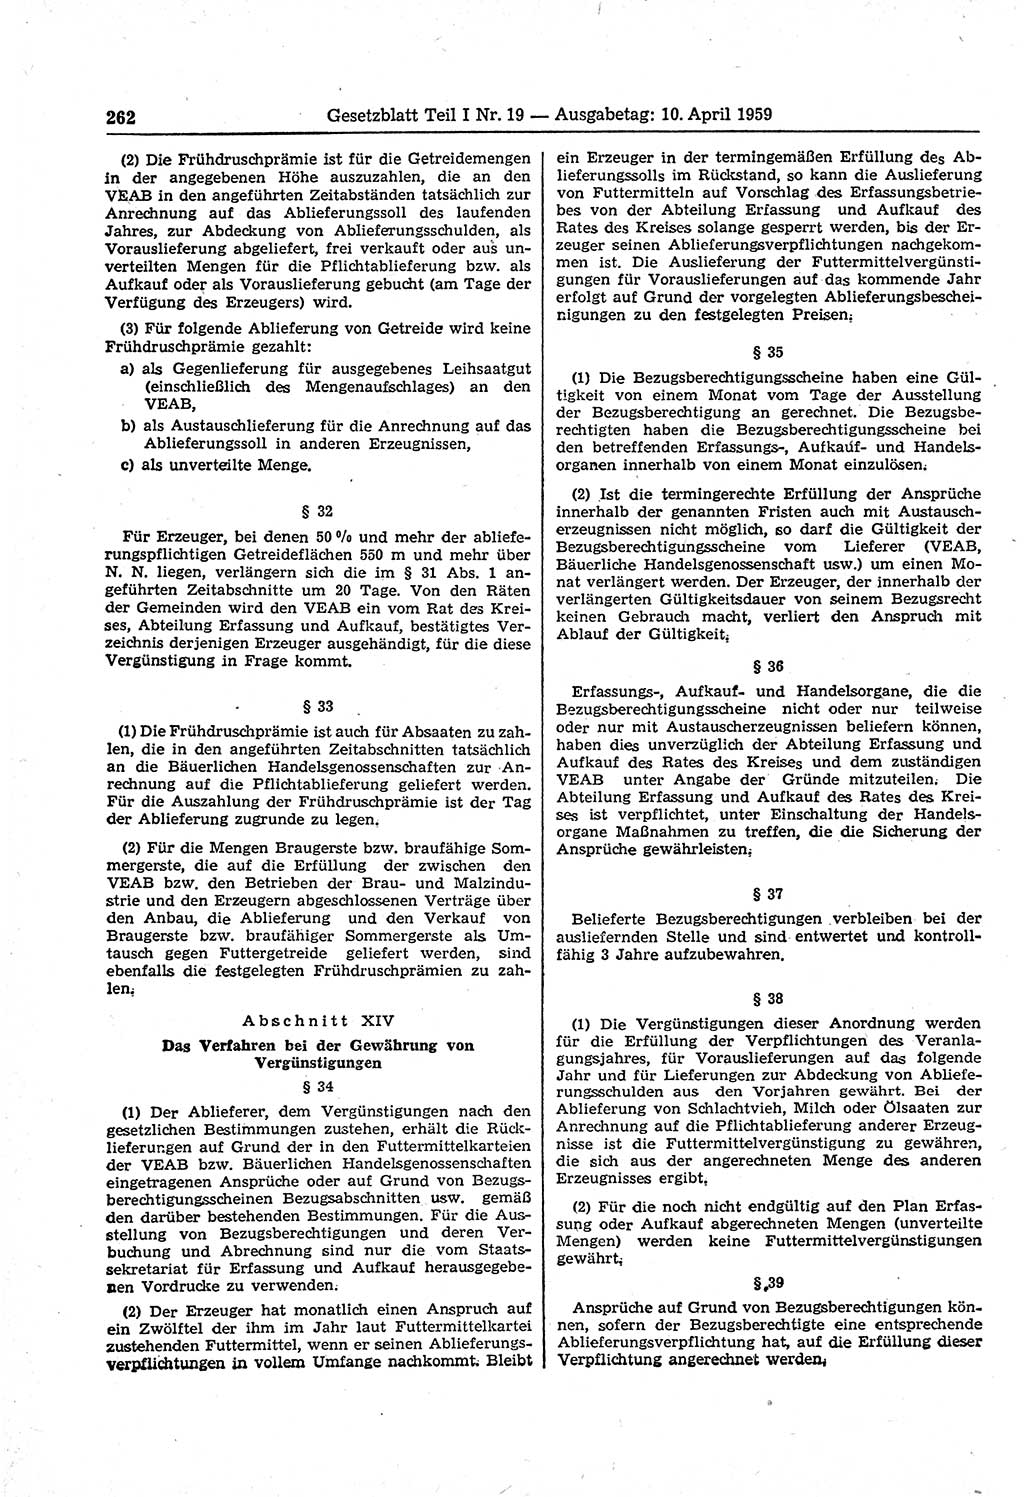 Gesetzblatt (GBl.) der Deutschen Demokratischen Republik (DDR) Teil Ⅰ 1959, Seite 262 (GBl. DDR Ⅰ 1959, S. 262)